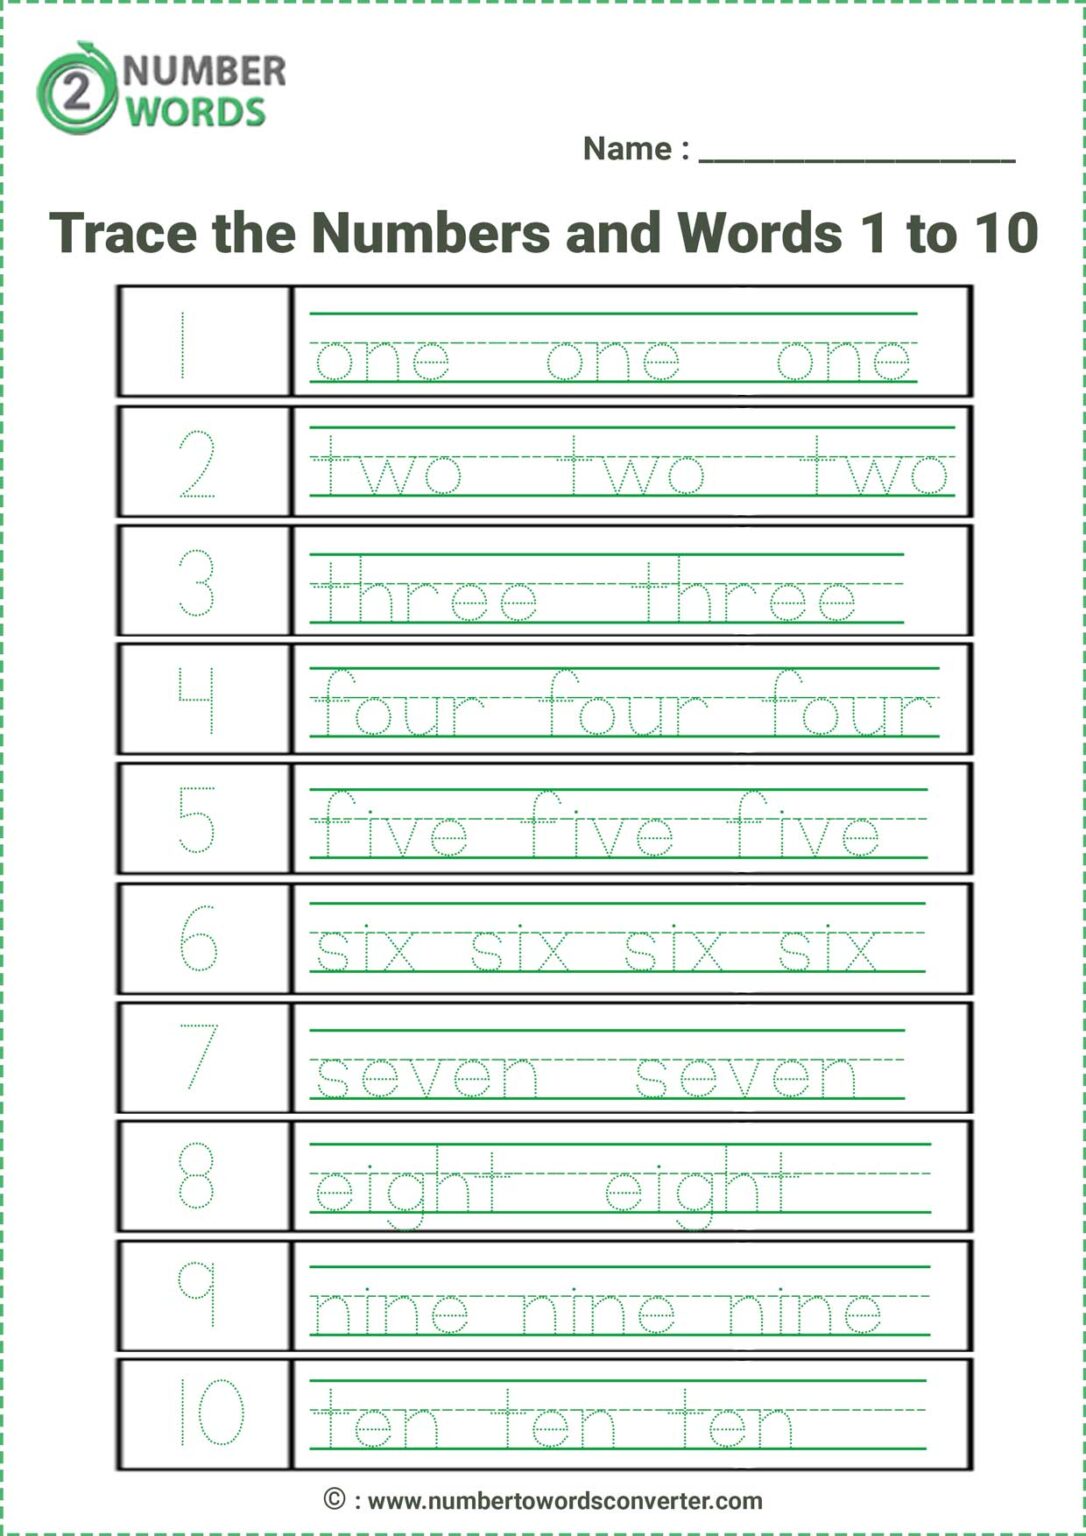 Spelling Numbers 1 100 Worksheet